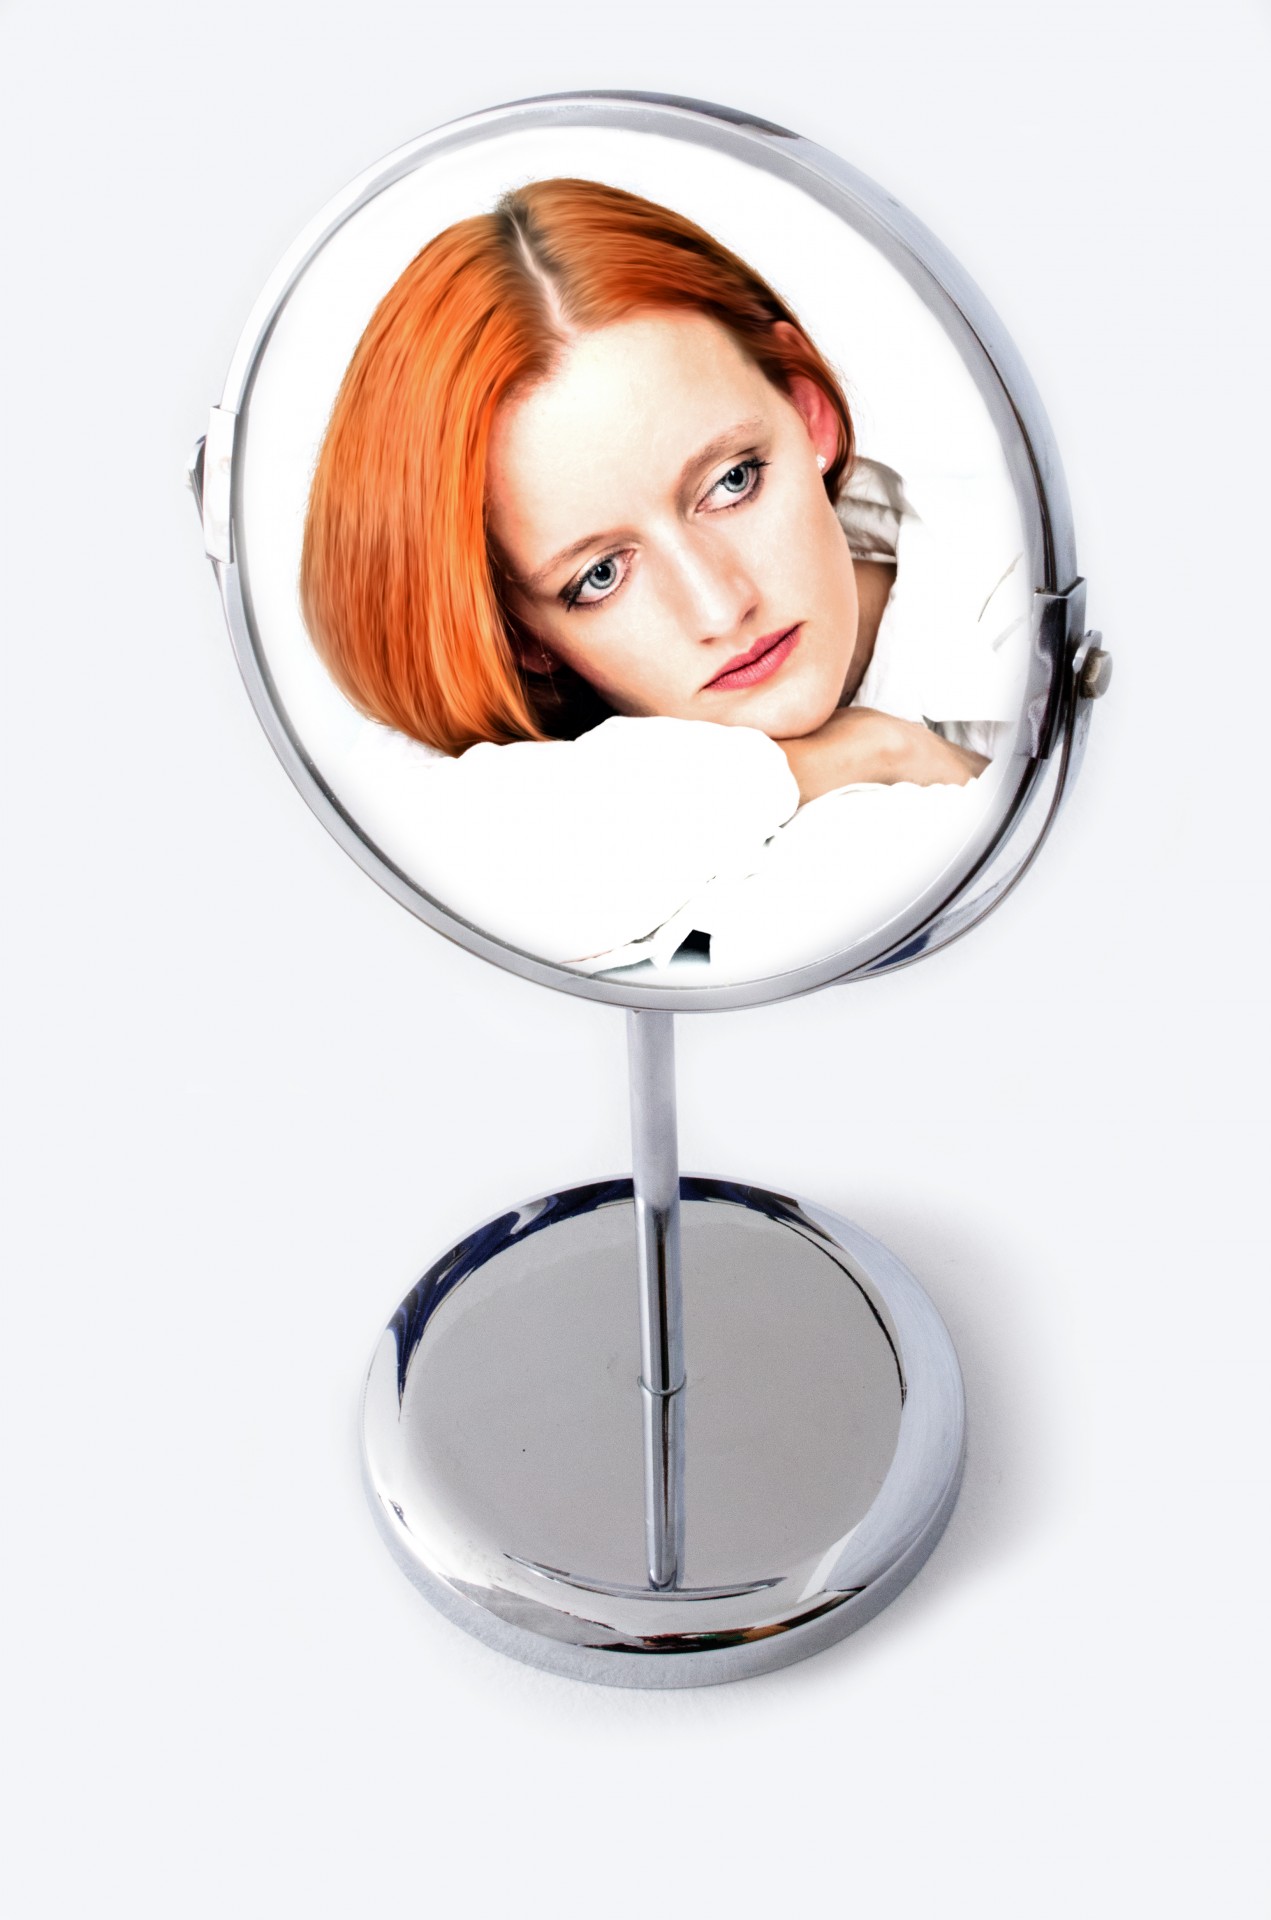 Изображение женщины в зеркале